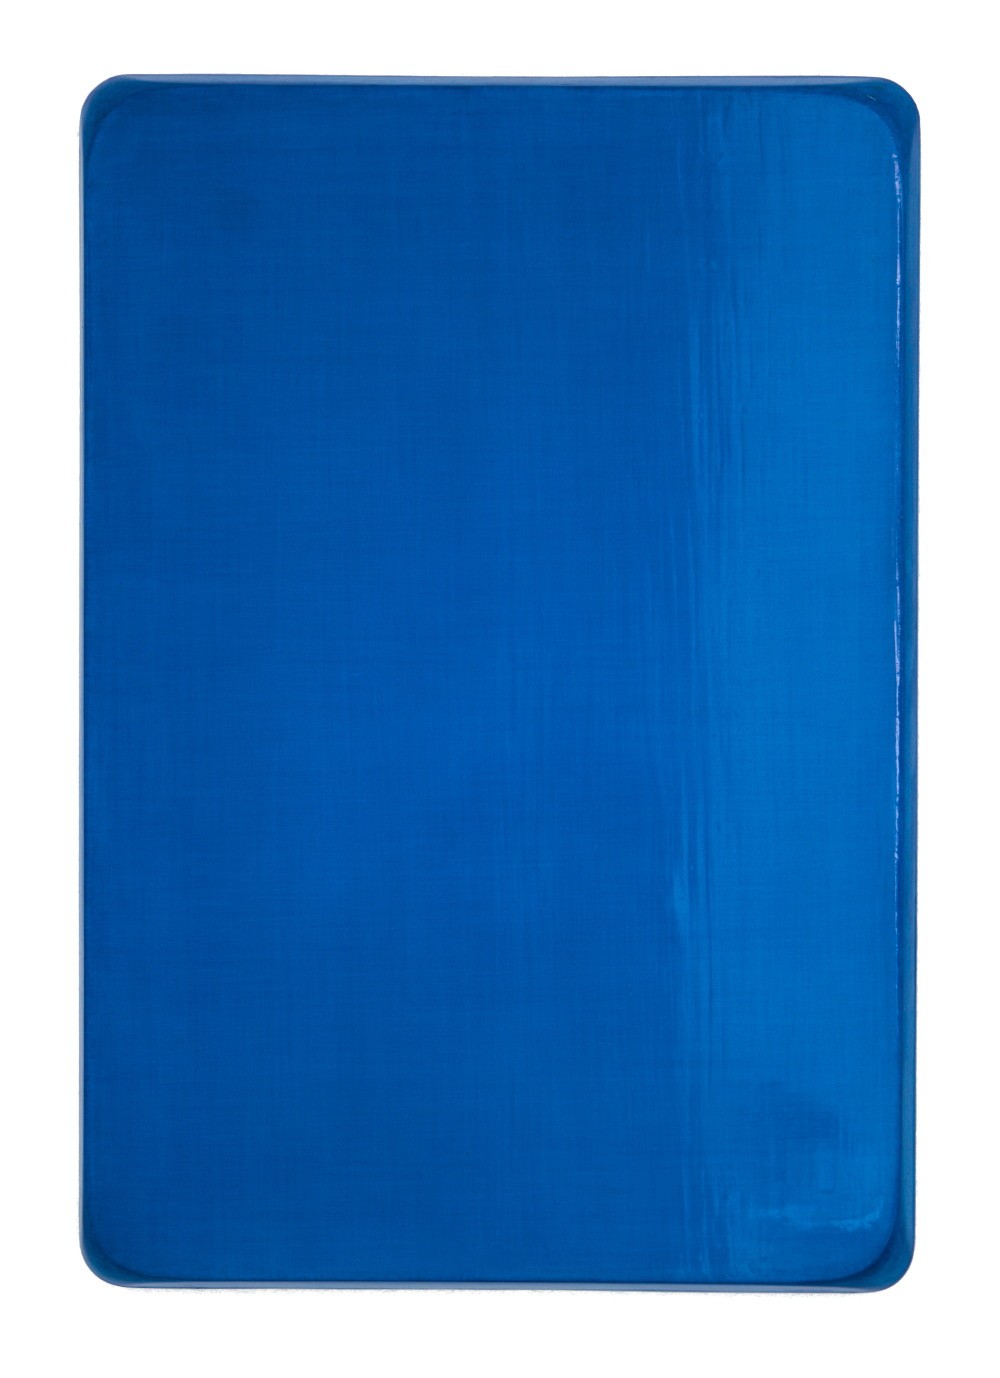 o.T. / Heliocoelinblau, Ultramarinfeinst, Aquarell auf Gips und Medium, 35 x 25 cm, 2008